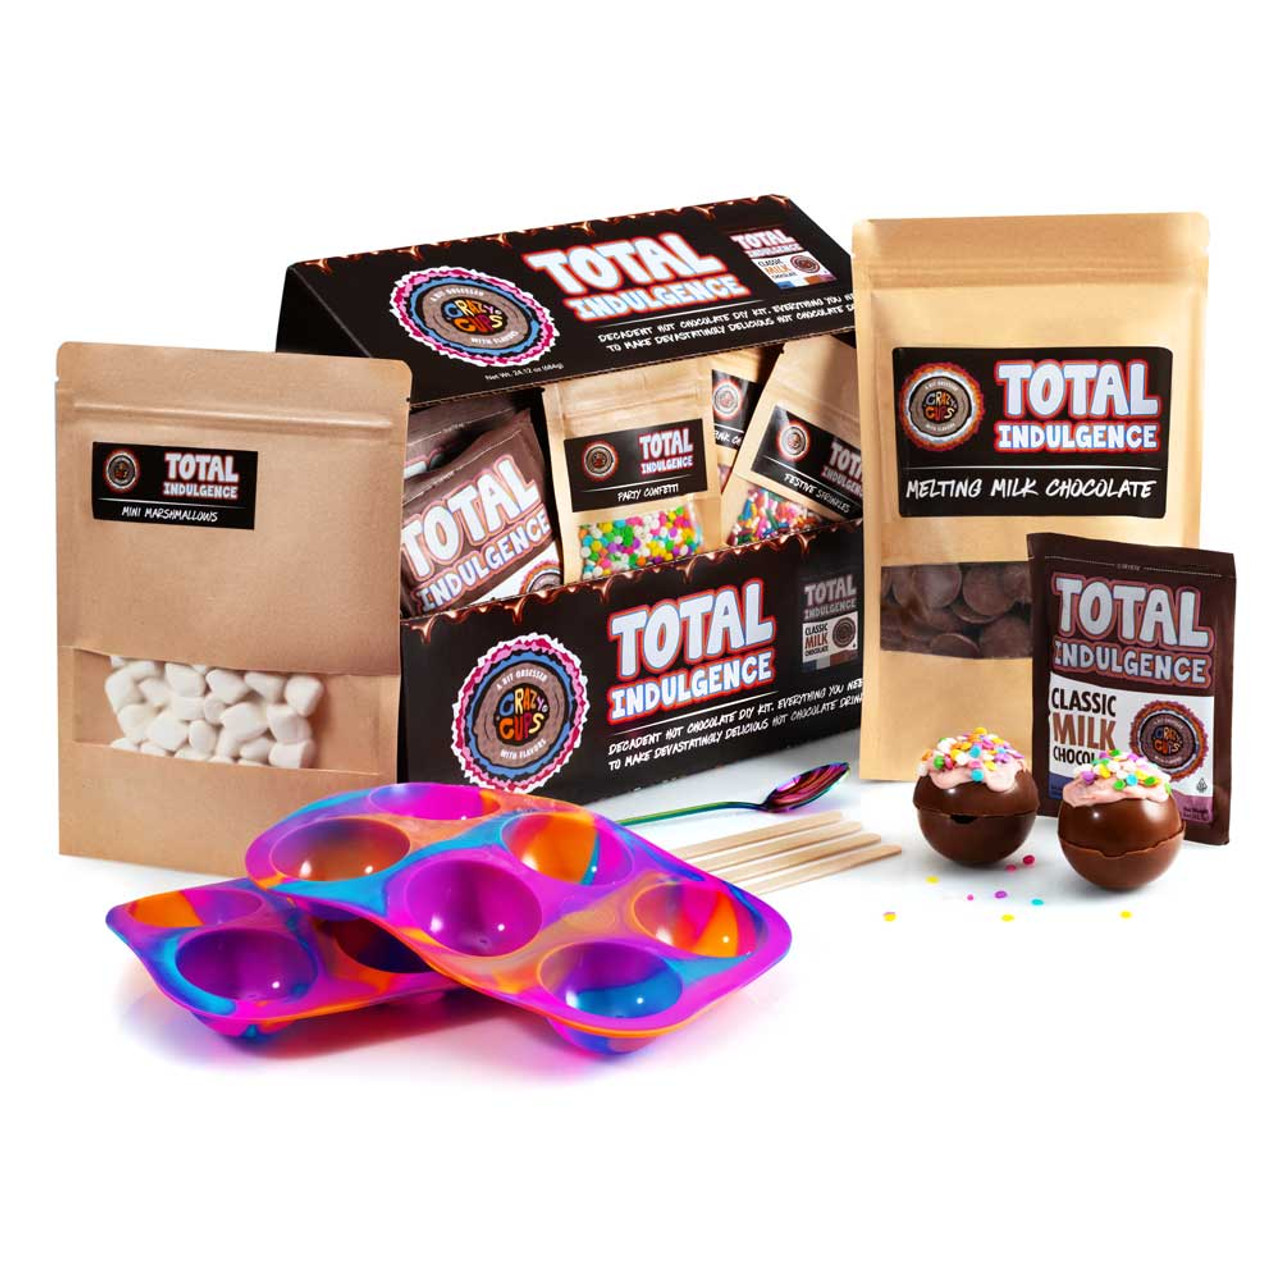 Classic Hot Chocolate Cocoa Gift Set, Includes Ceramic Mug and Classic Mix  Hot Cocoa